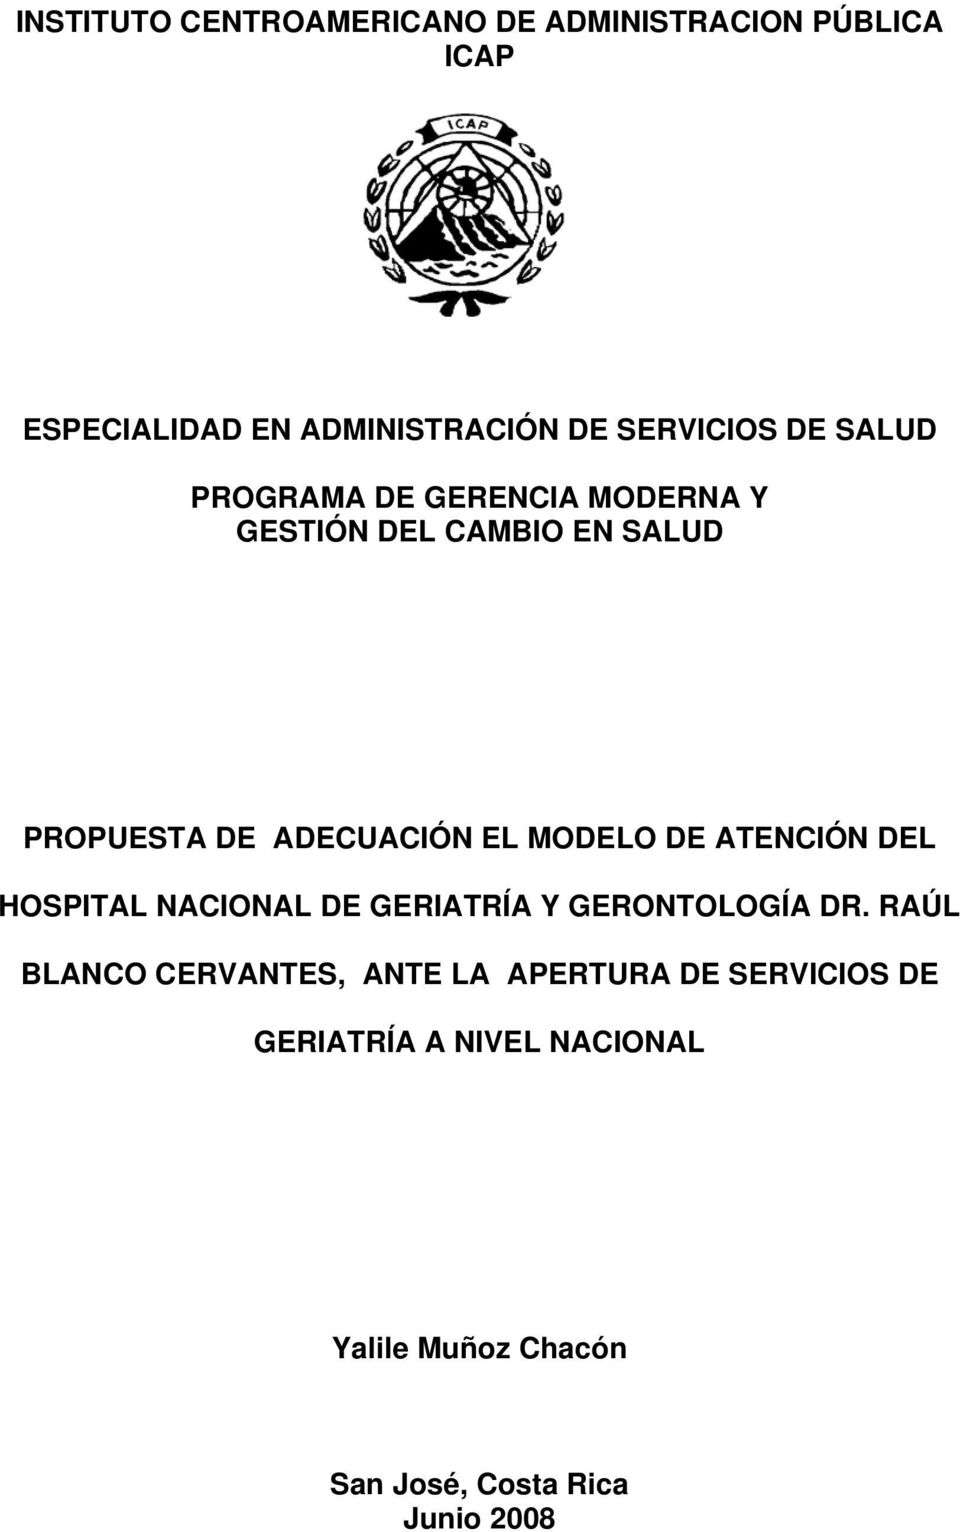 MODELO DE ATENCIÓN DEL HOSPITAL NACIONAL DE GERIATRÍA Y GERONTOLOGÍA DR.